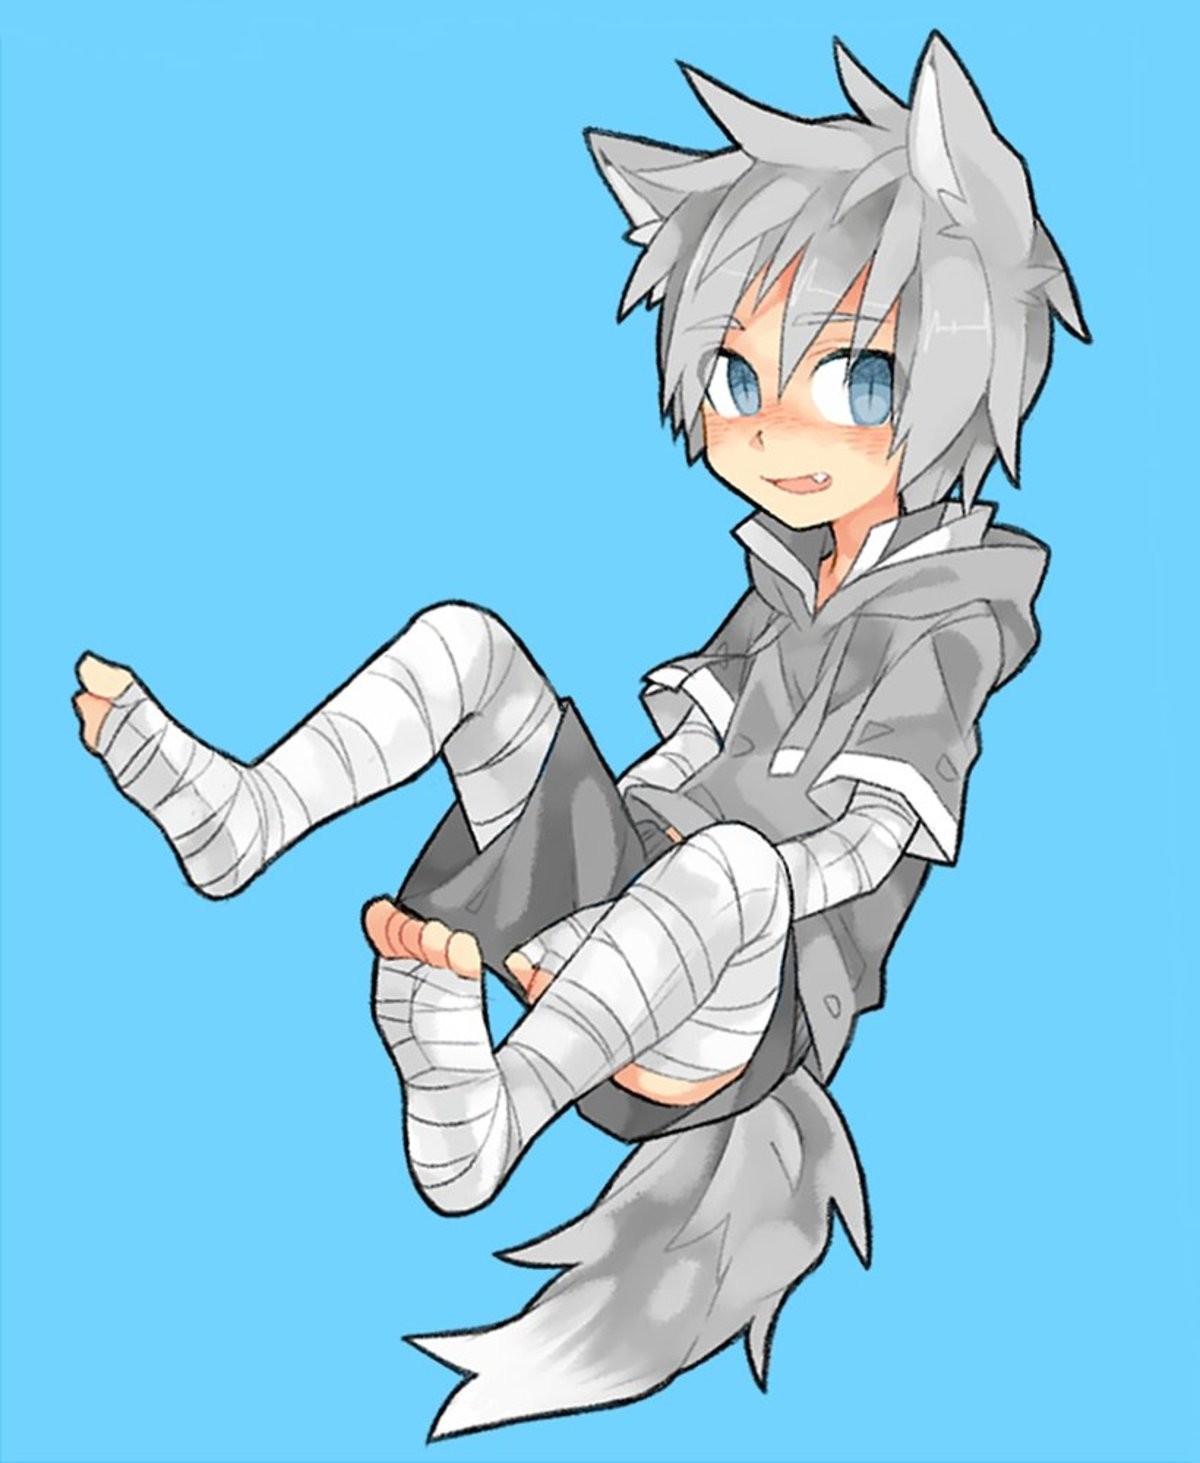 Shadow wolf demon anime boy. 